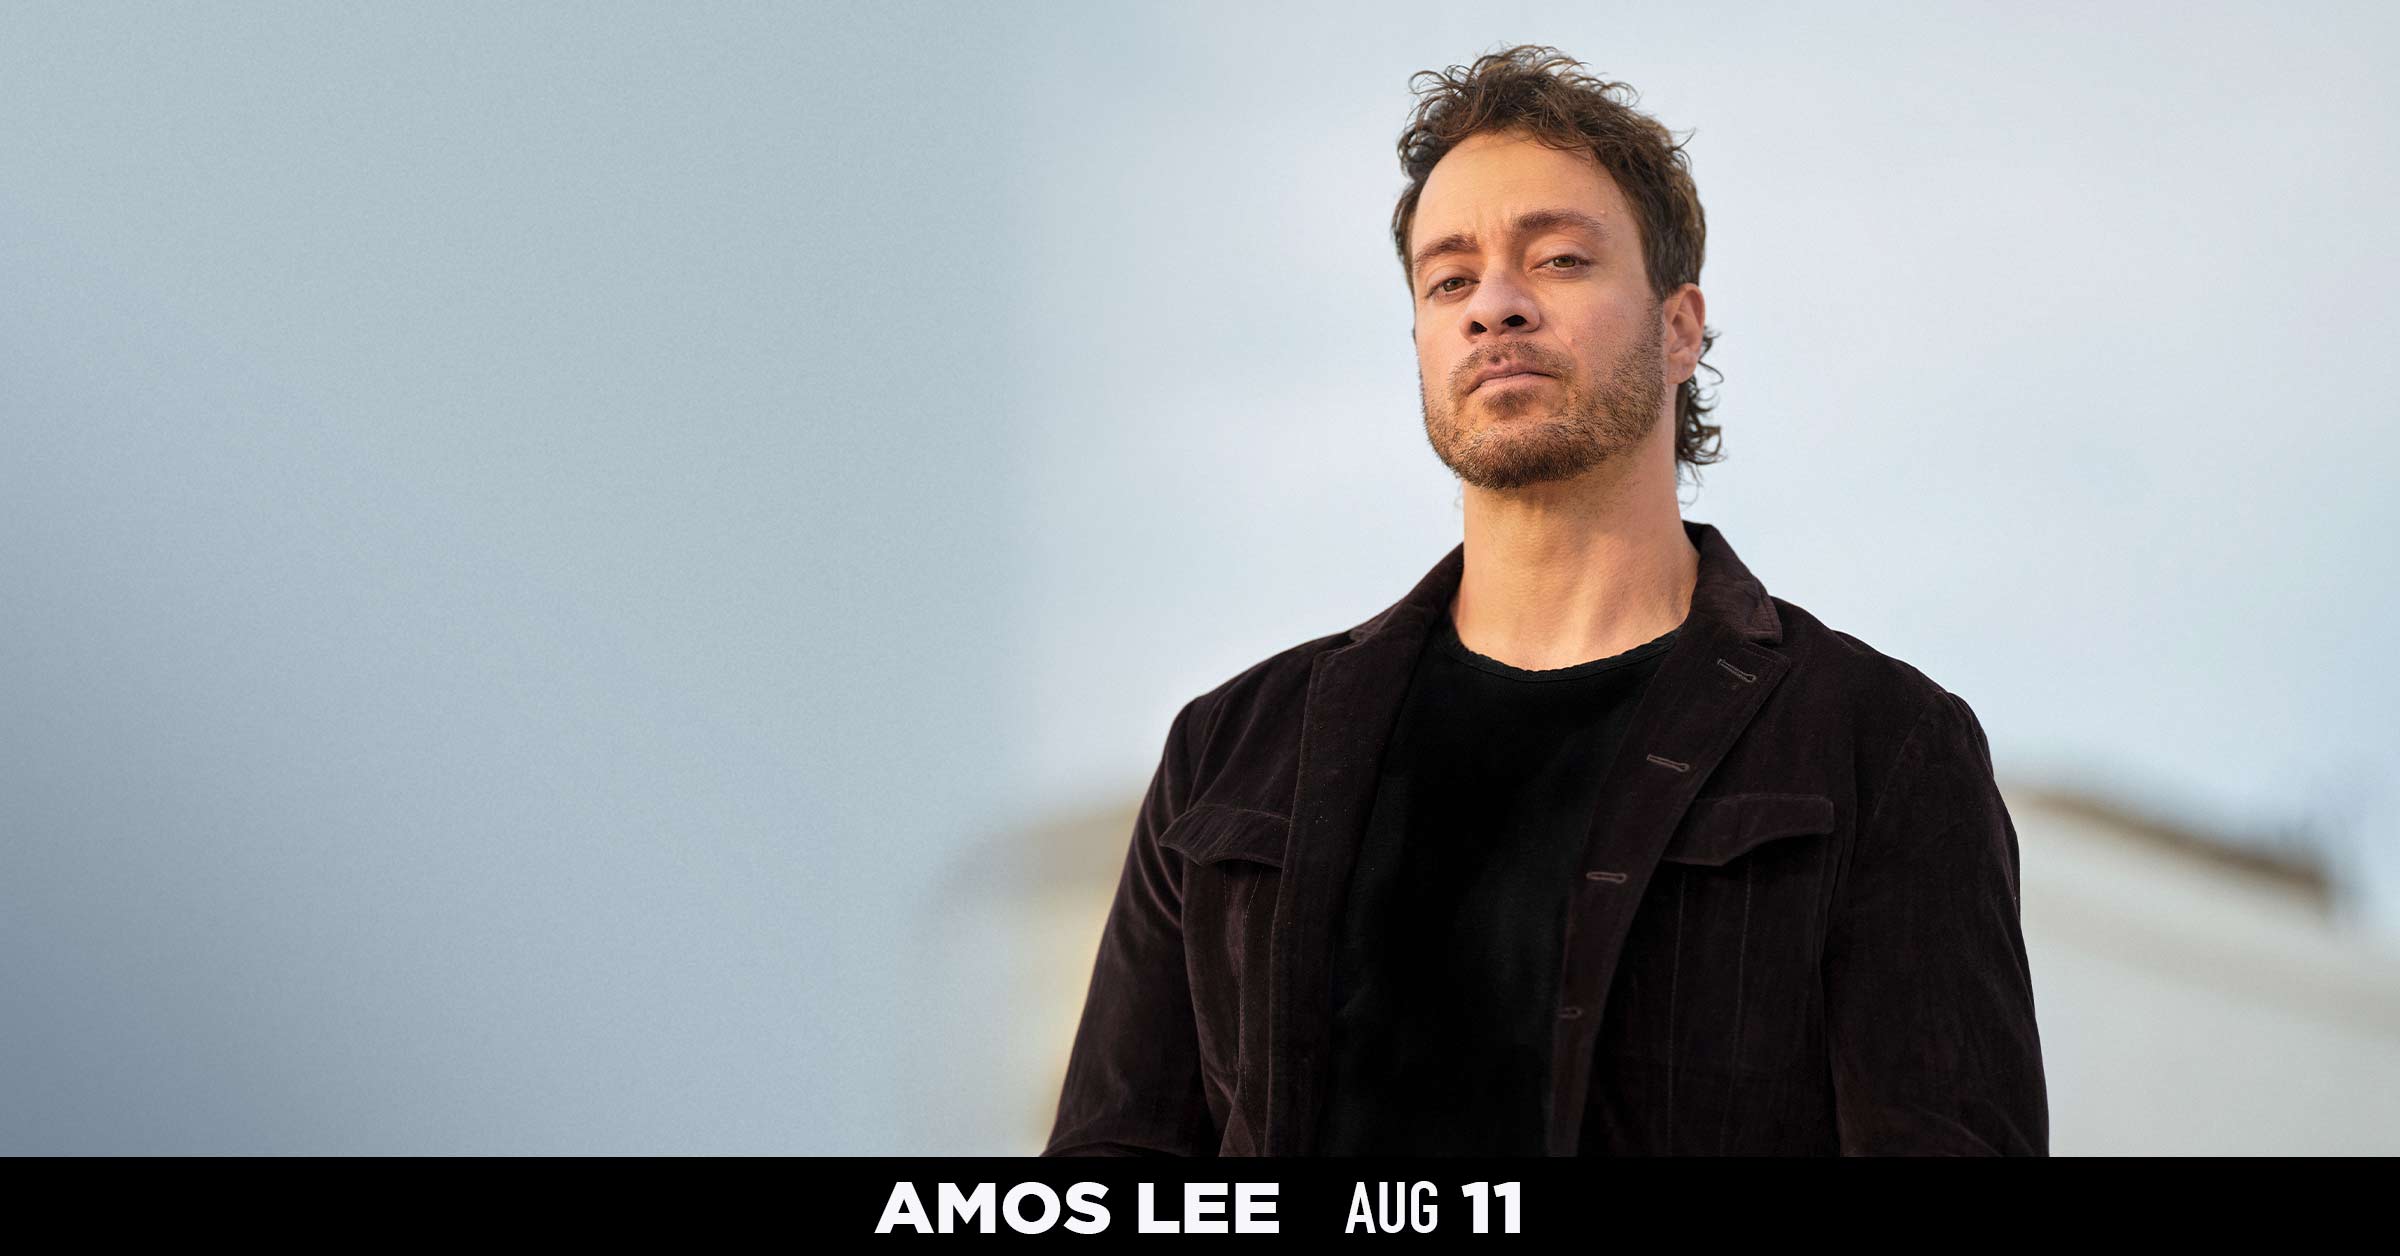 Amos Lee - Aug 11